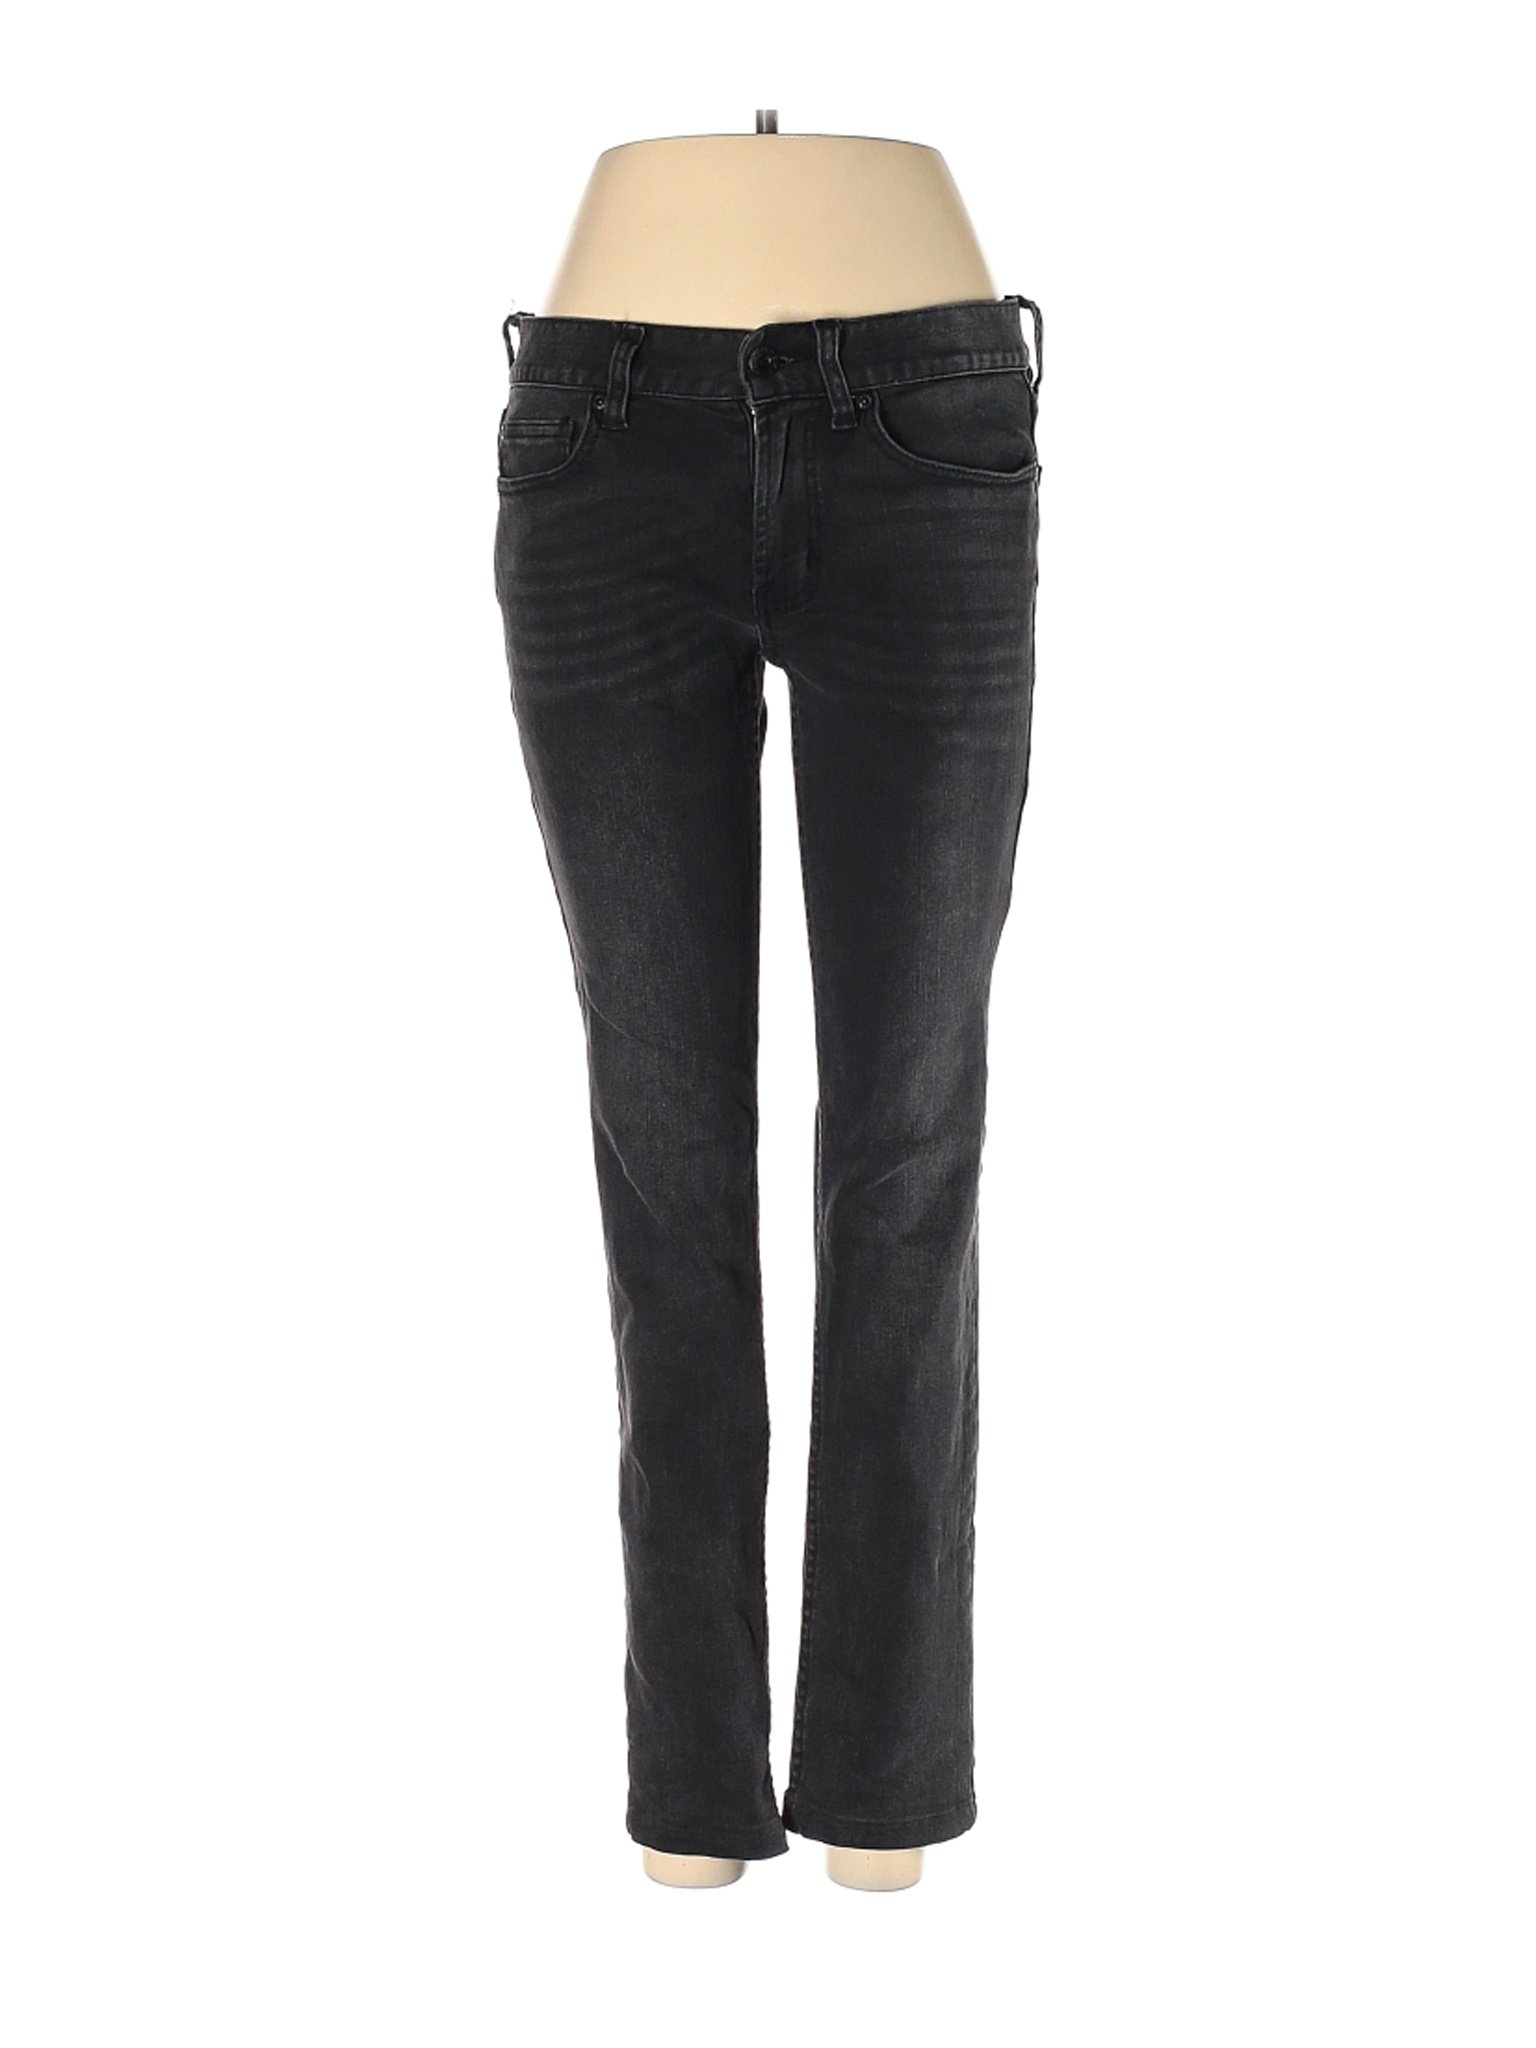 Rude Jeans Women Black Jeans 30W | eBay